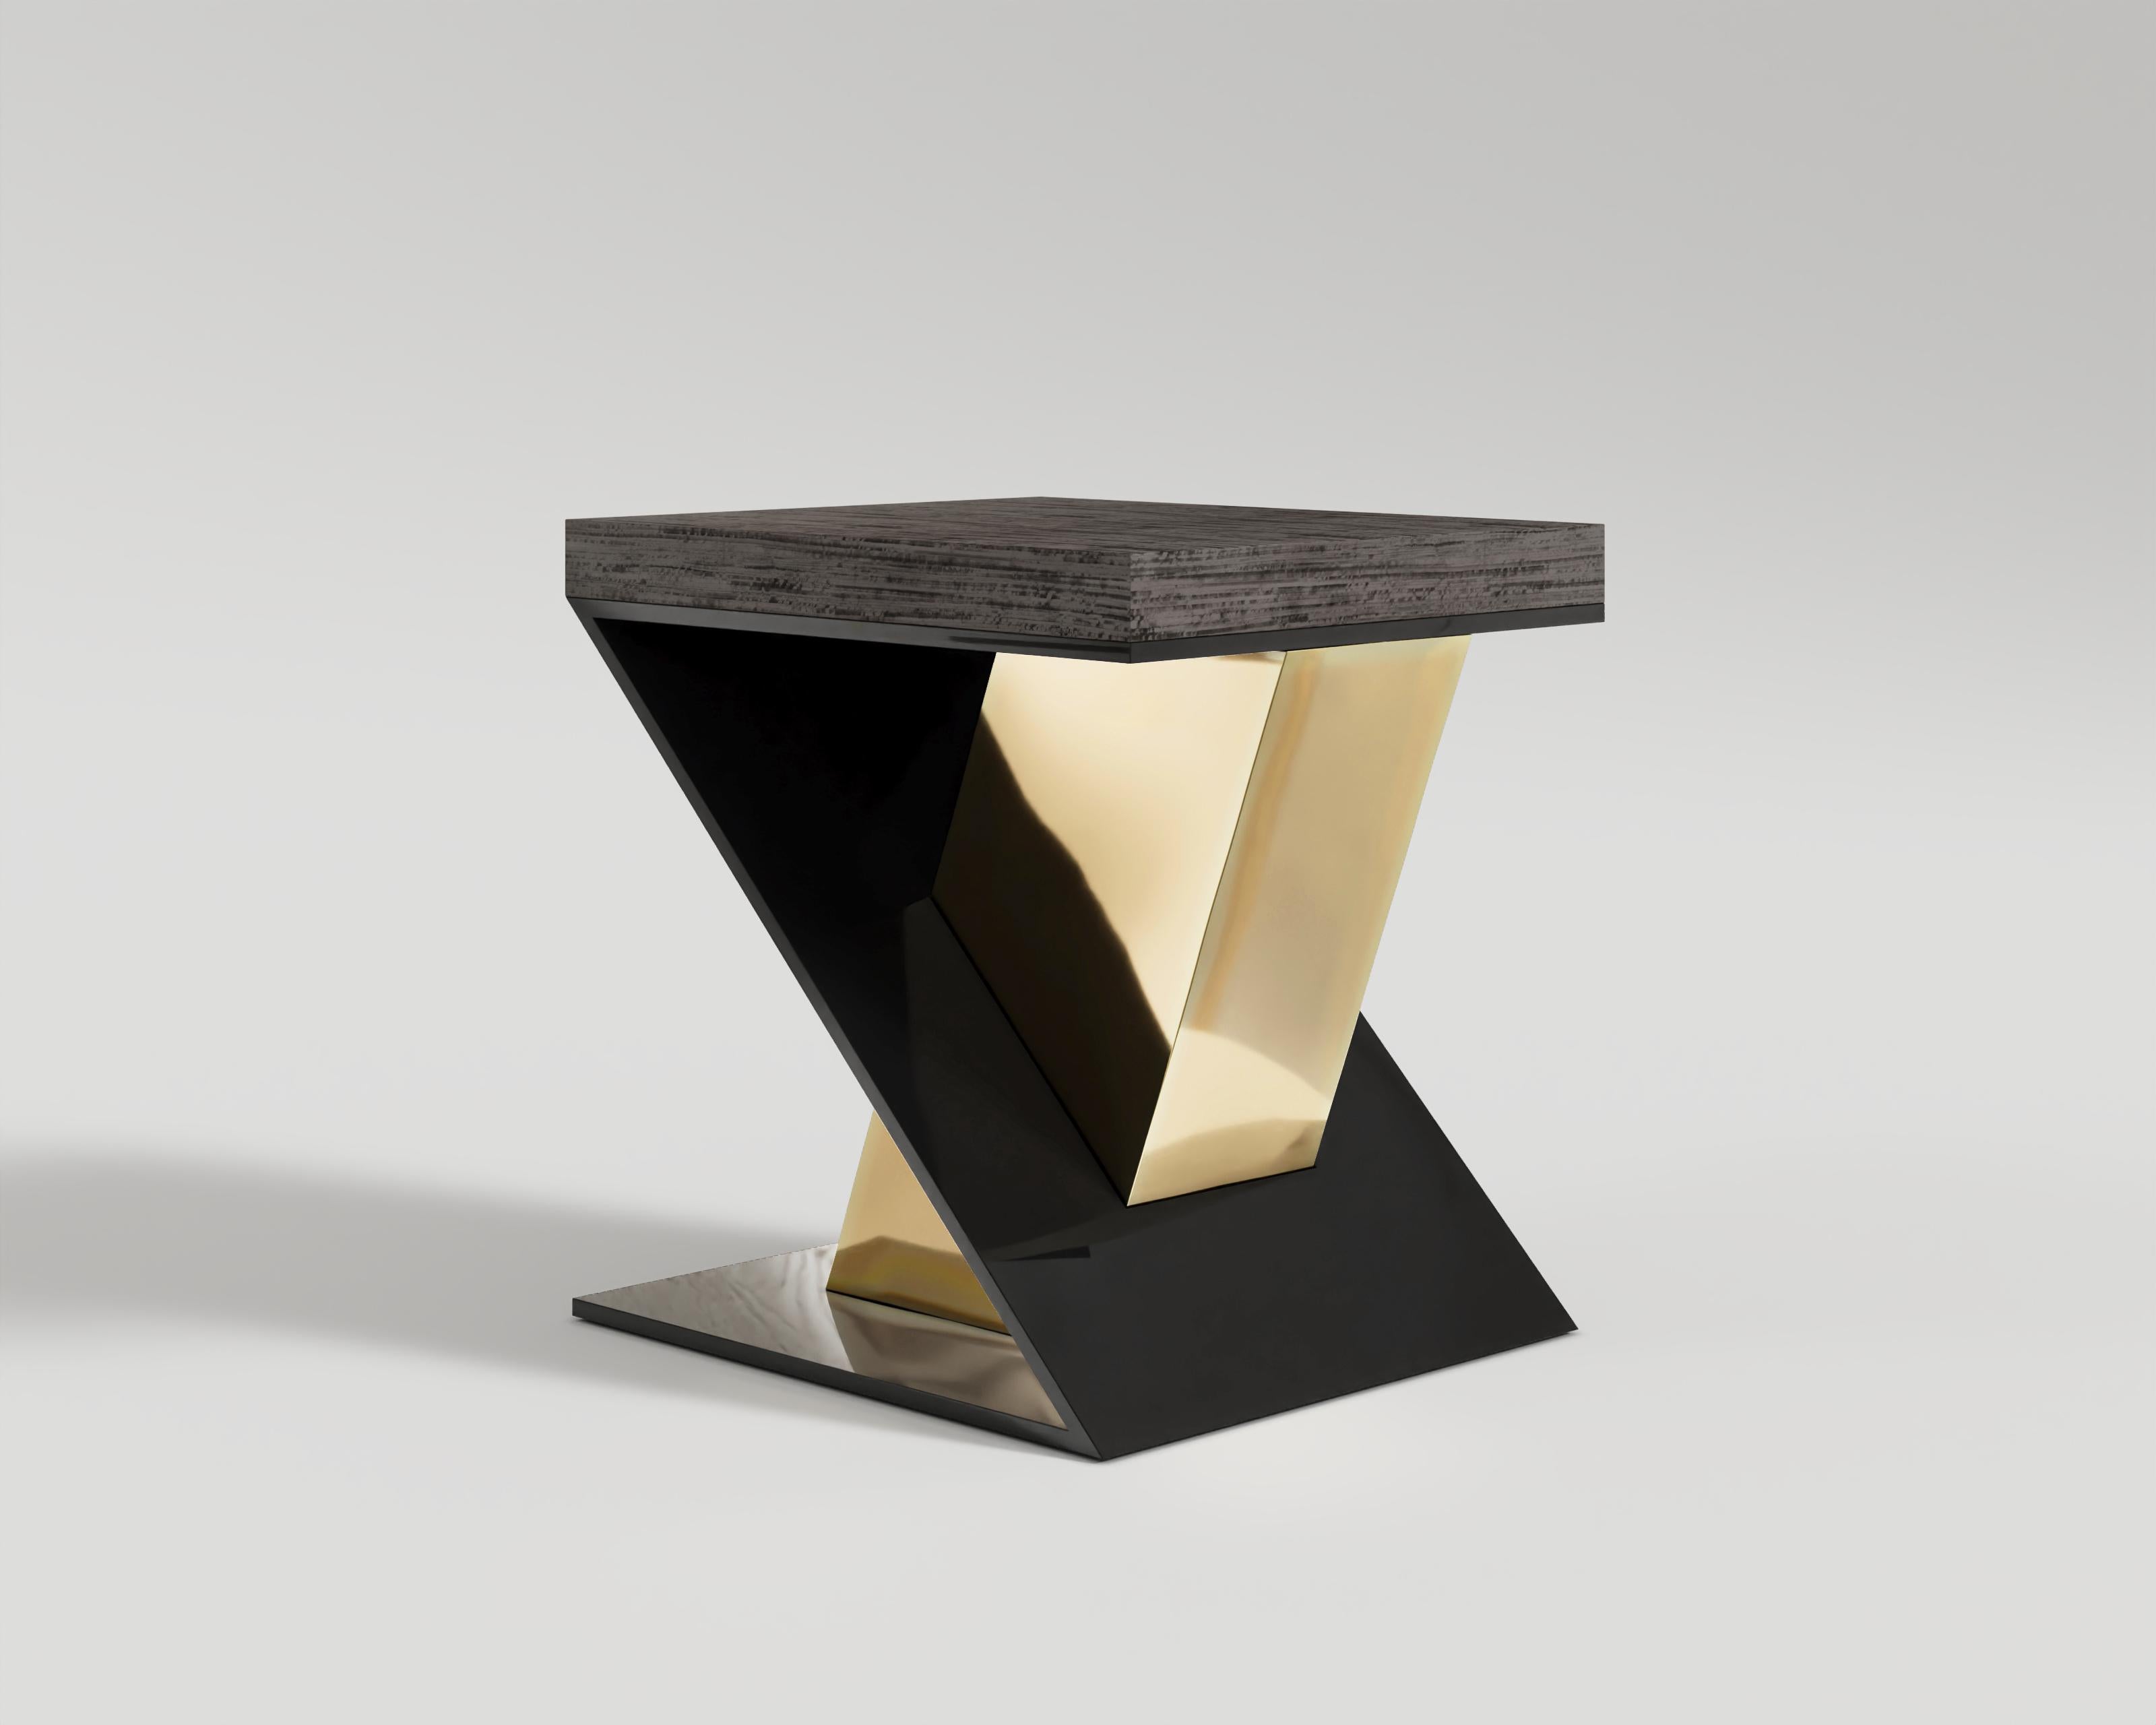 Gero Beistelltisch
Werten Sie Ihren Wohnbereich mit dem exquisiten Gero Handcrafted Luxury Side Table auf, einem Meisterwerk der Kunst und des Designs. Dieser opulente Beistelltisch verbindet nahtlos handwerkliche Perfektion mit der Raffinesse eines